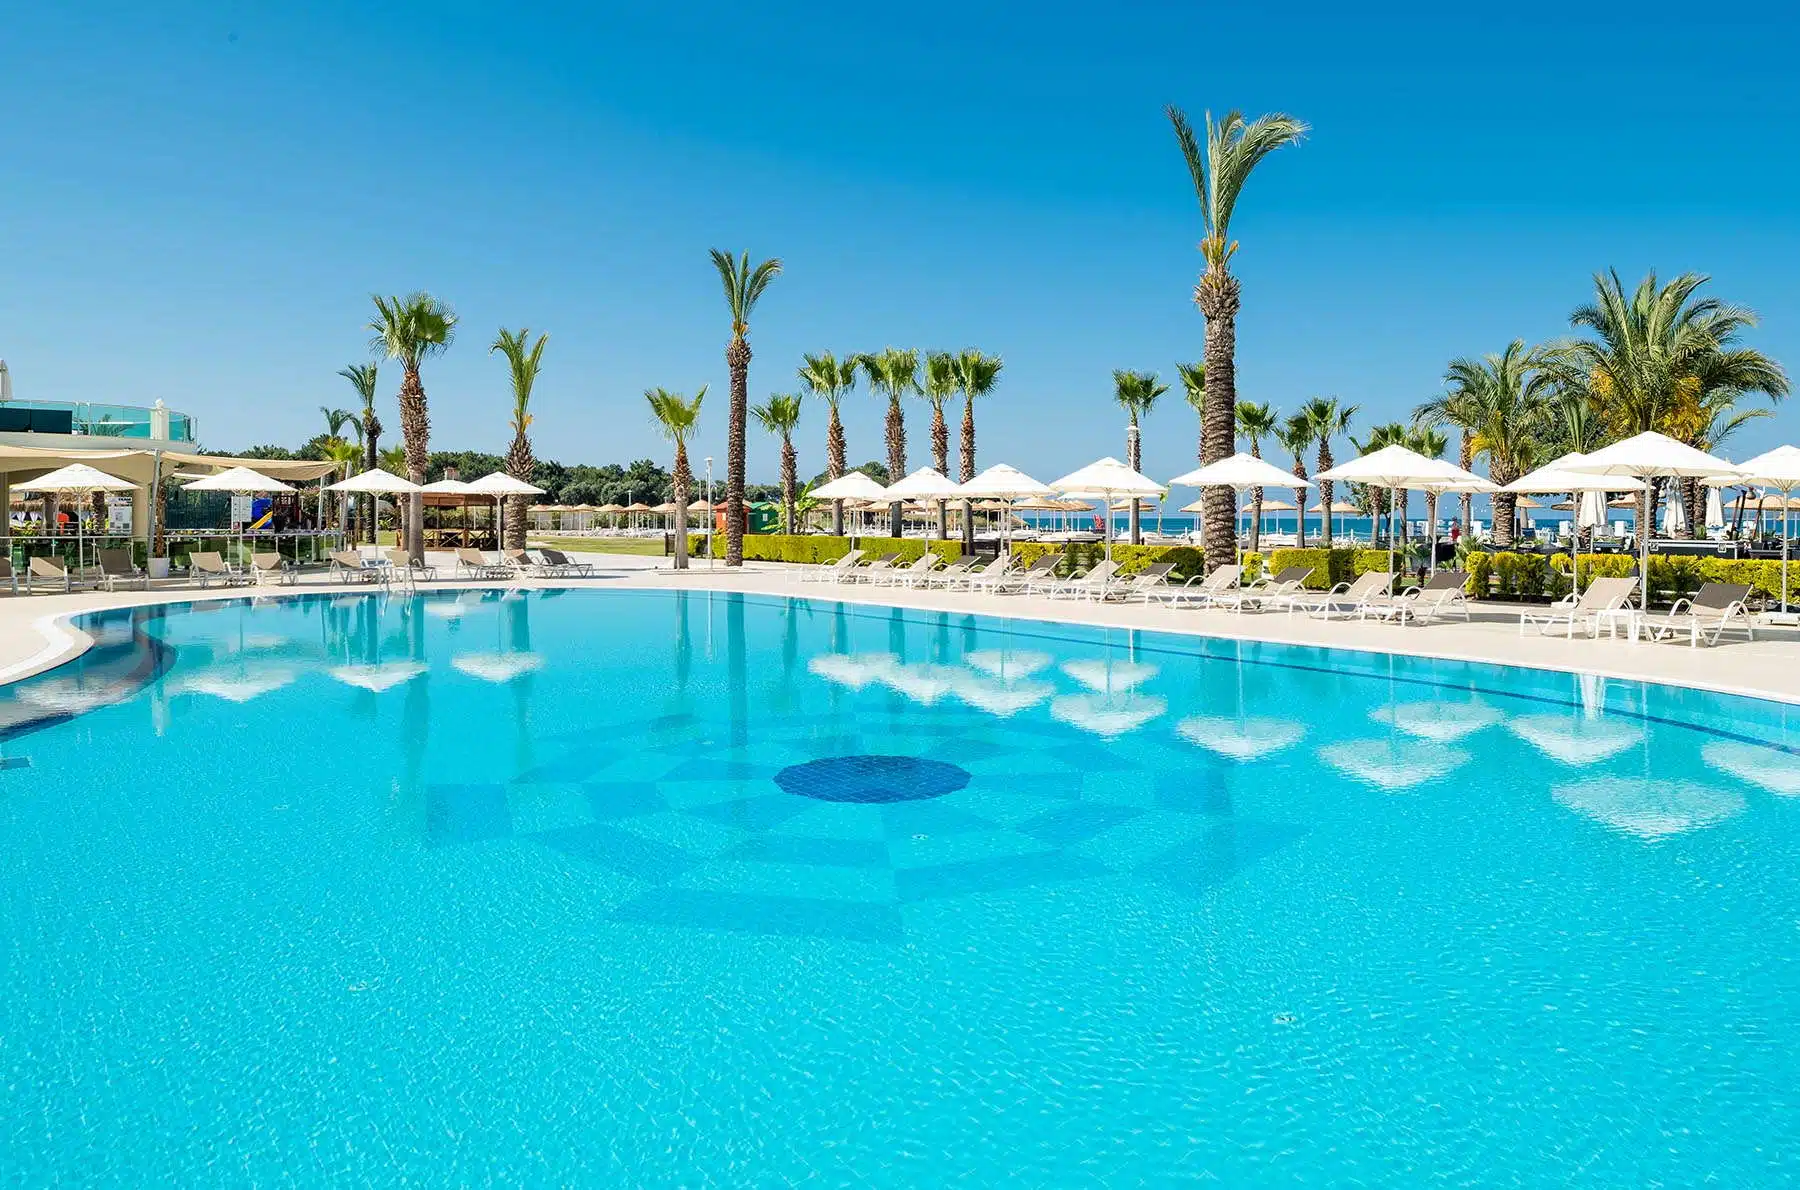 A Spa-tacular Vacation Awaits at Apollonium Spa & Beach Resort in Turkey